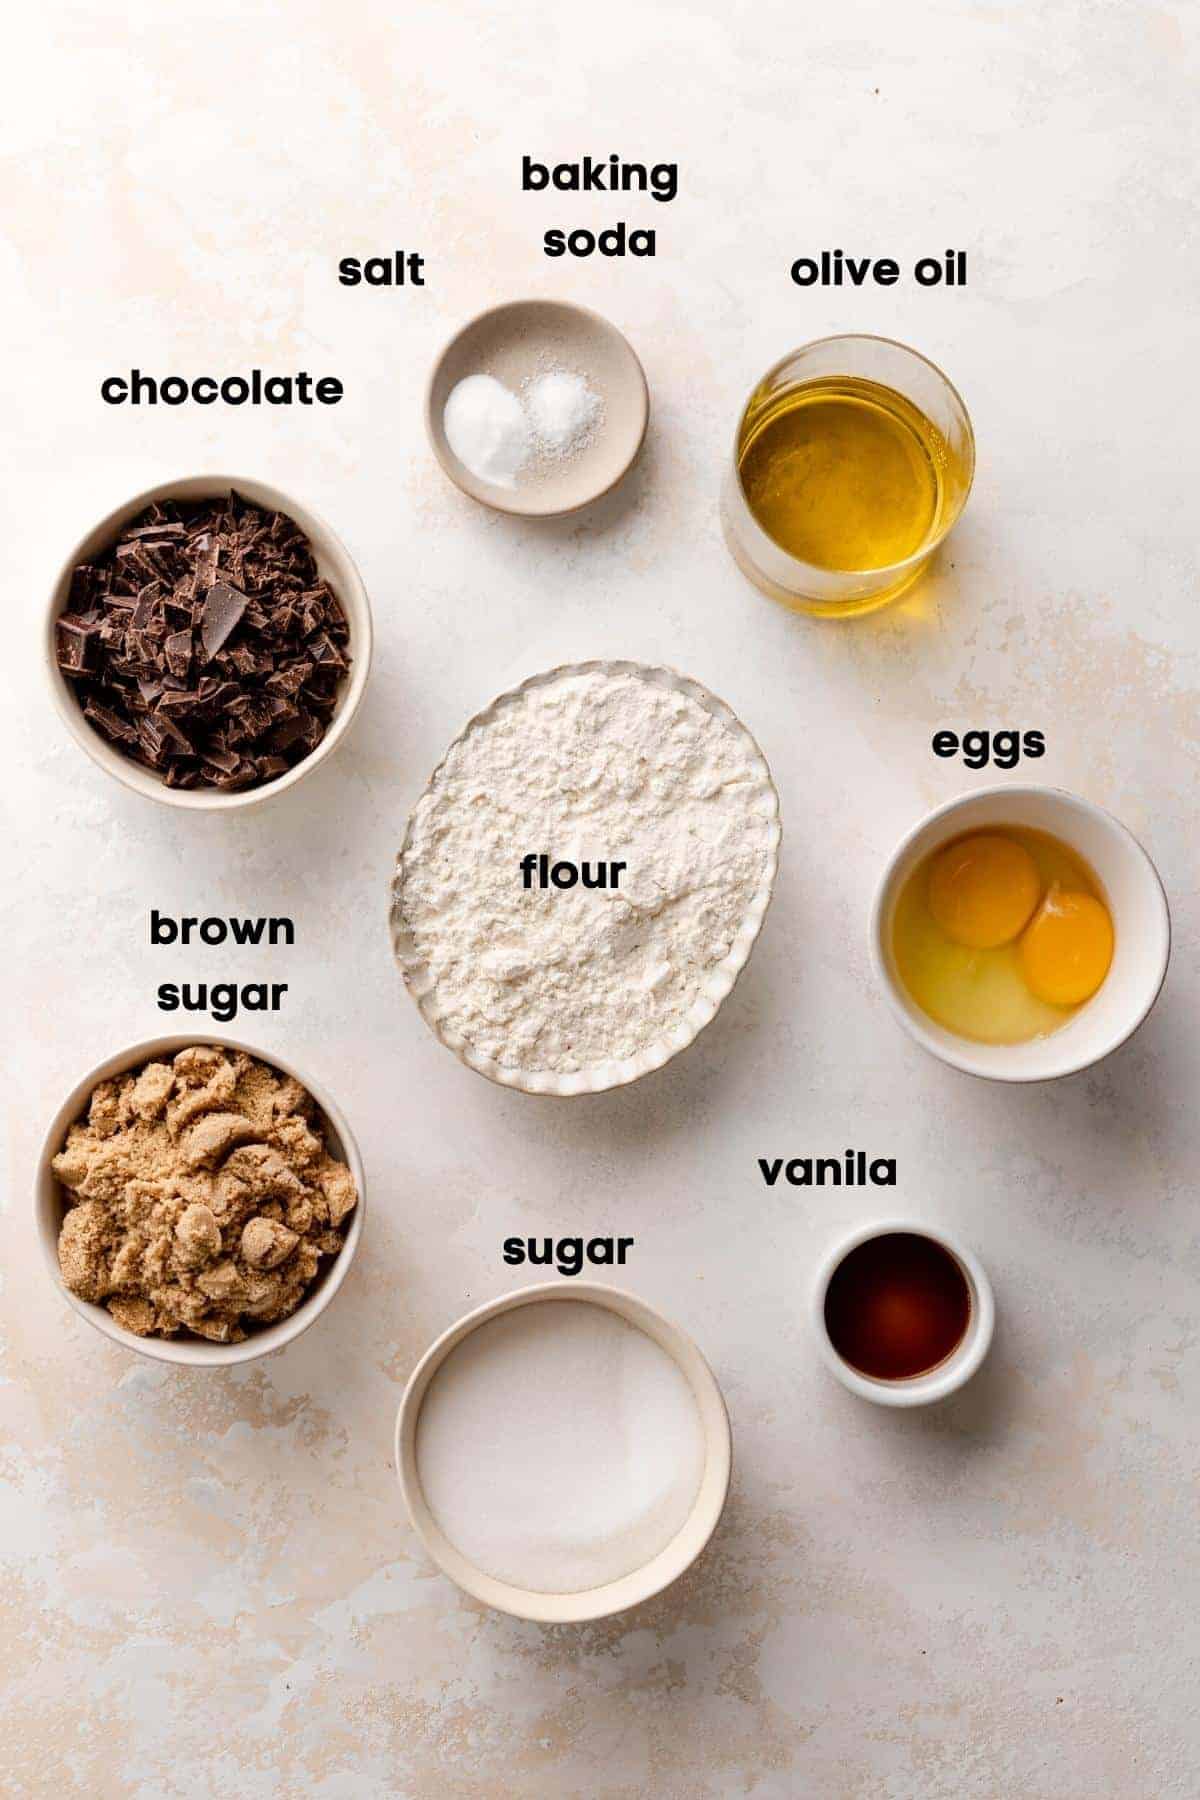 ingredients needed to make olive oil cookies.